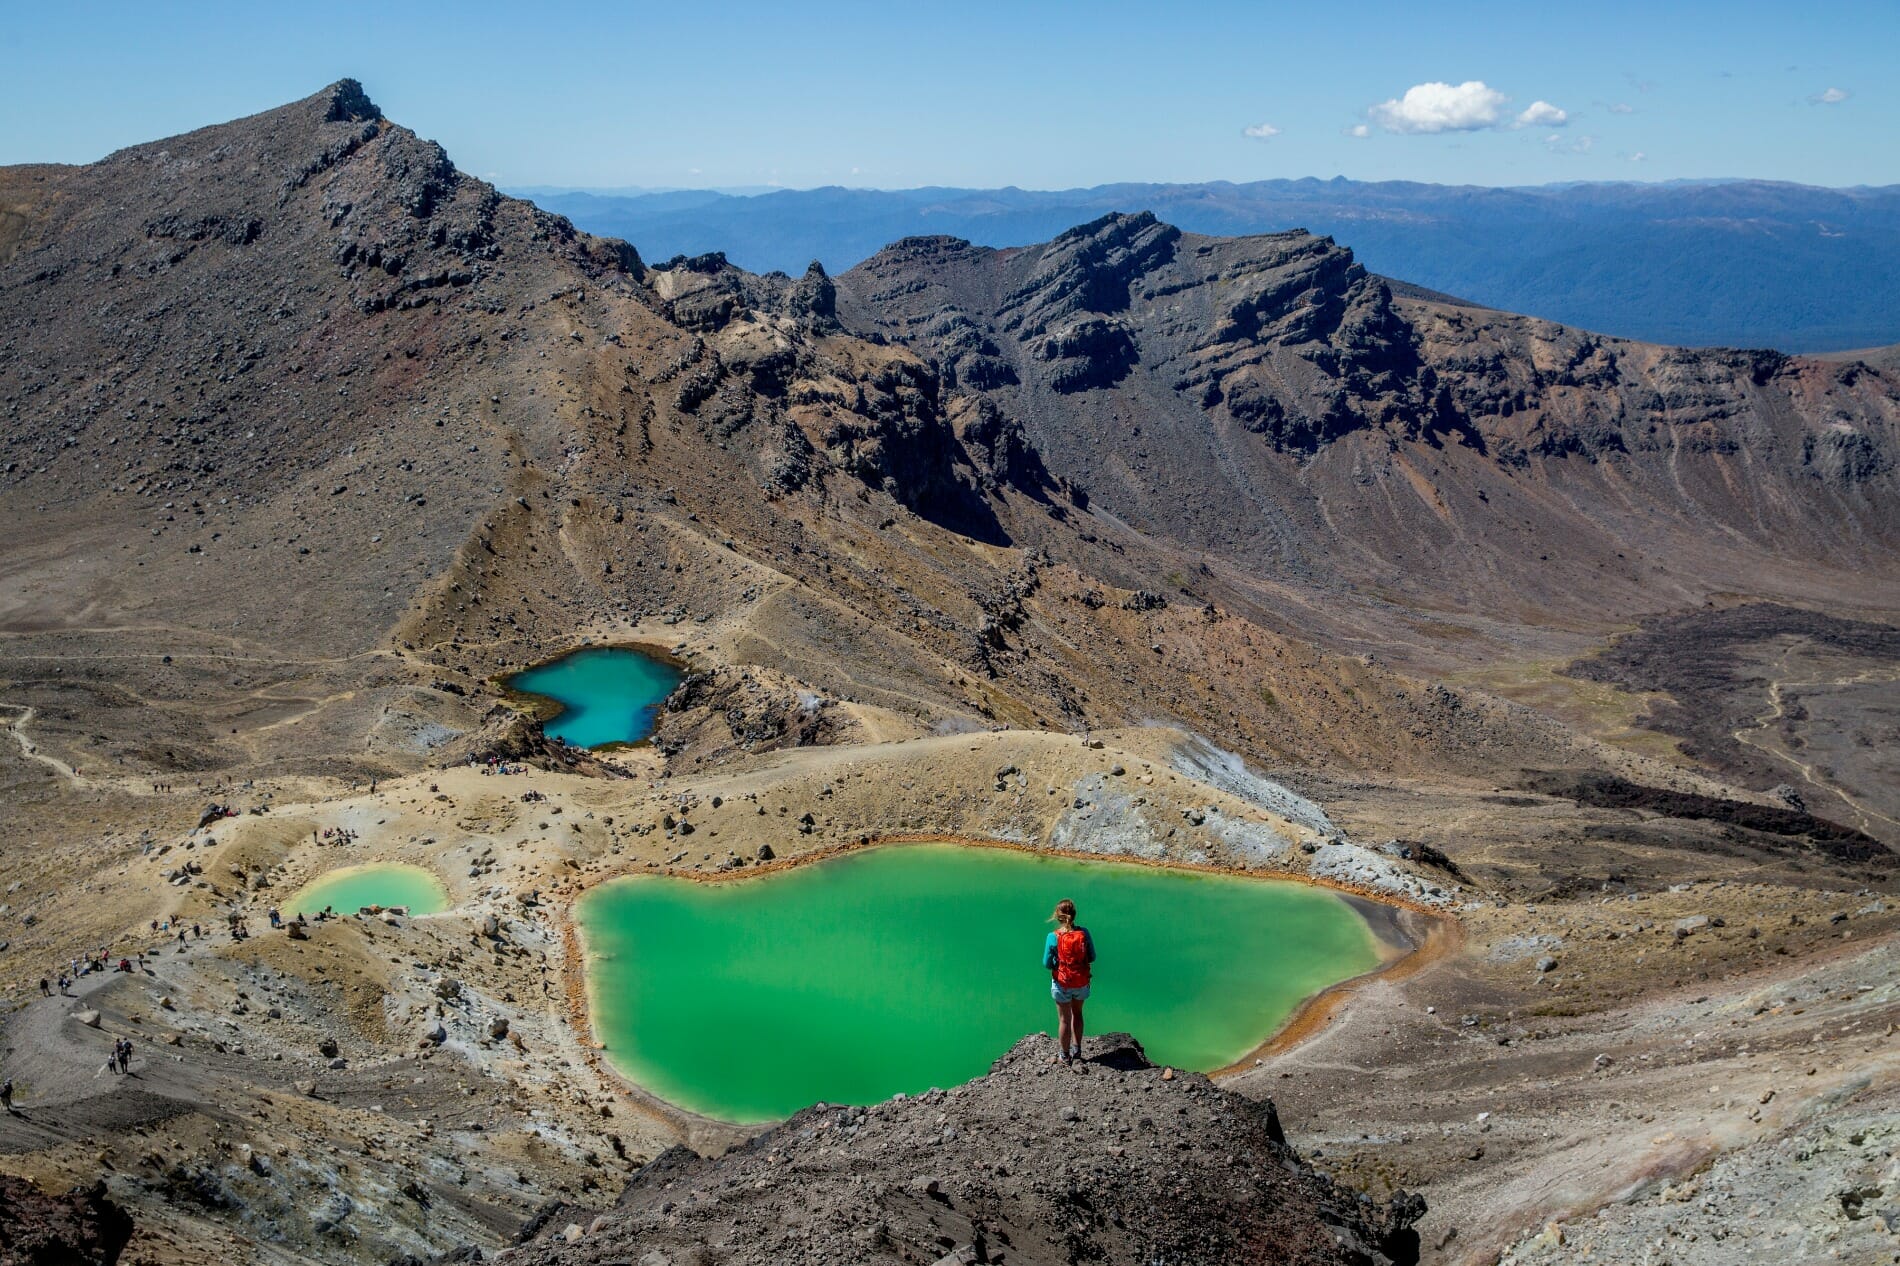 Tongariro National Park byder på øde vulkanske landskaber. Er tiden til det, er det et oplagt sted at tage på vandring.